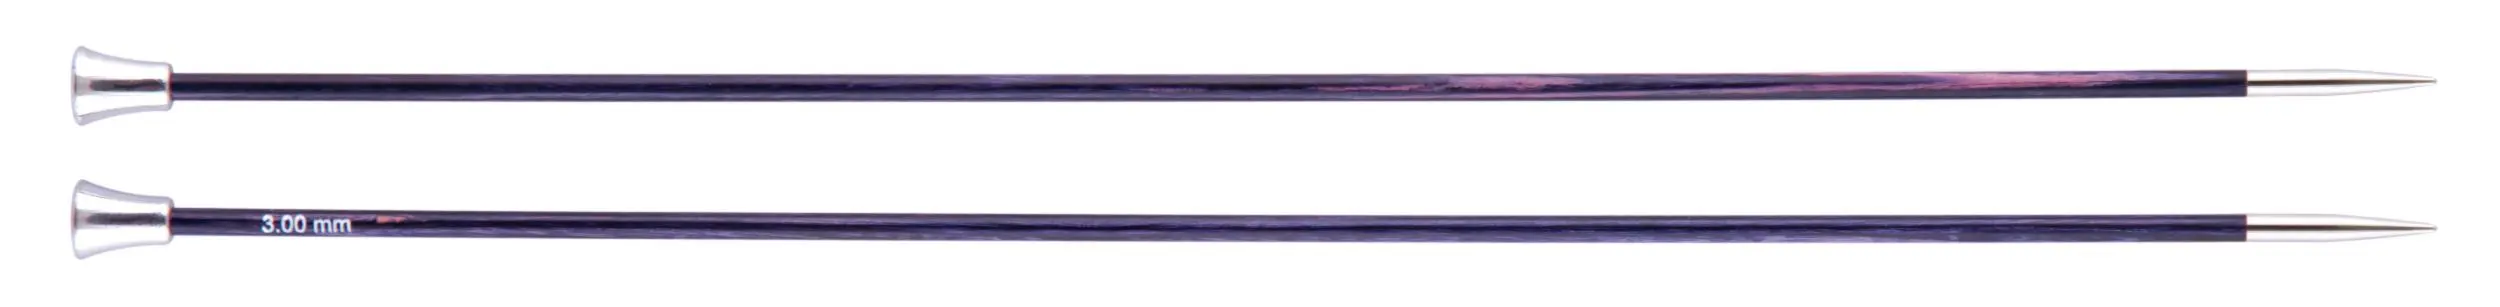 29191 Спиці прямі Royale KnitPro, 30 см, 3.00 мм